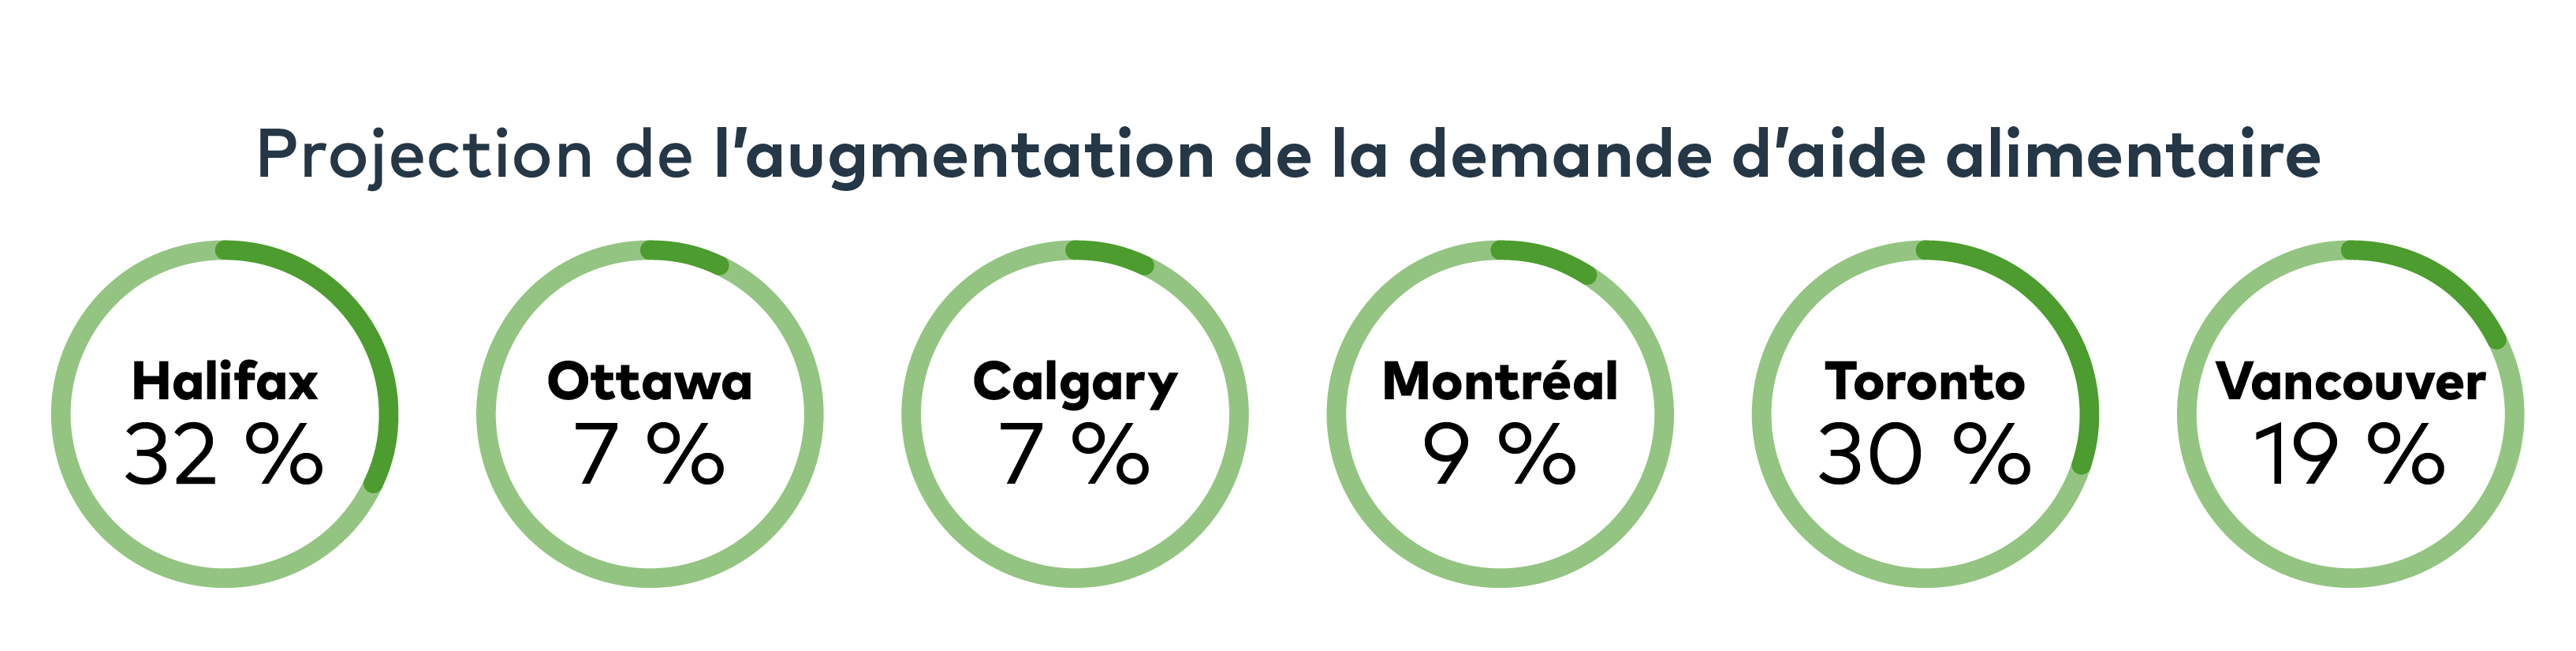 Projection de l'augmentation de la demande d'aide alimentaire. 32% à Halifax. 7% à Ottawa et Calgary. 9% à Montréal. 30% à Toronto. 19% à Vancouver.